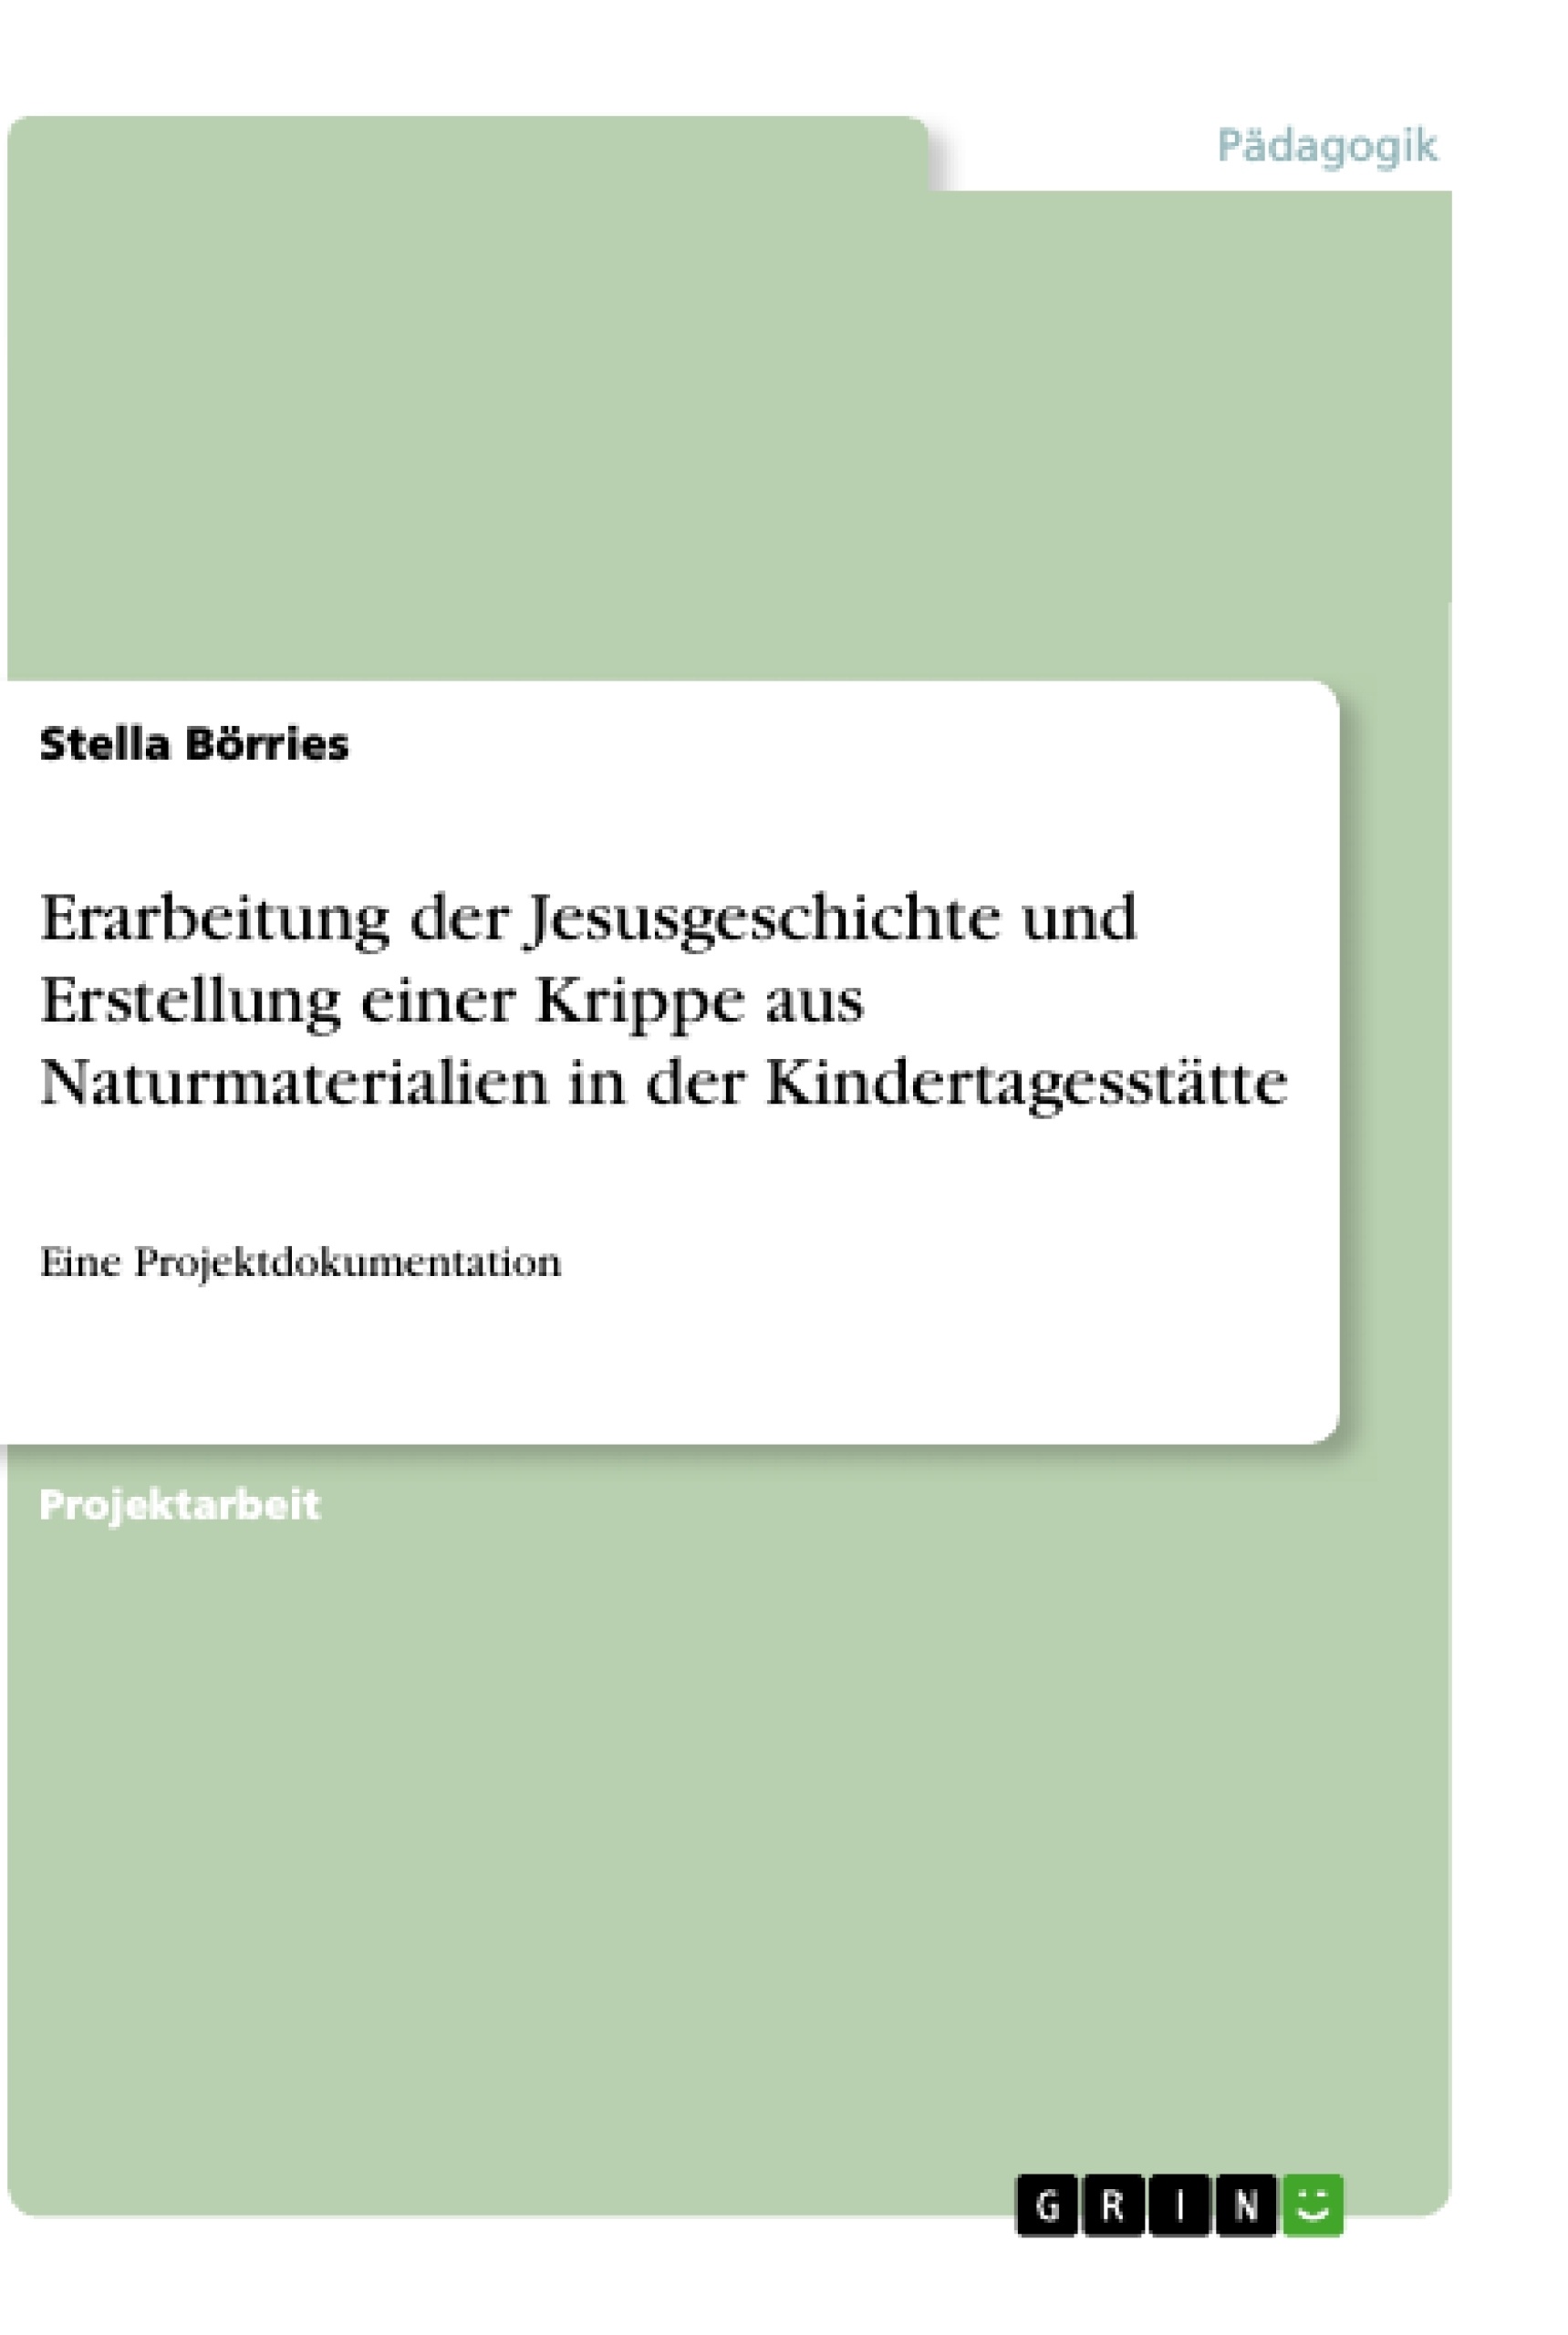 Title: Erarbeitung der Jesusgeschichte und Erstellung einer Krippe aus Naturmaterialien in der Kindertagesstätte